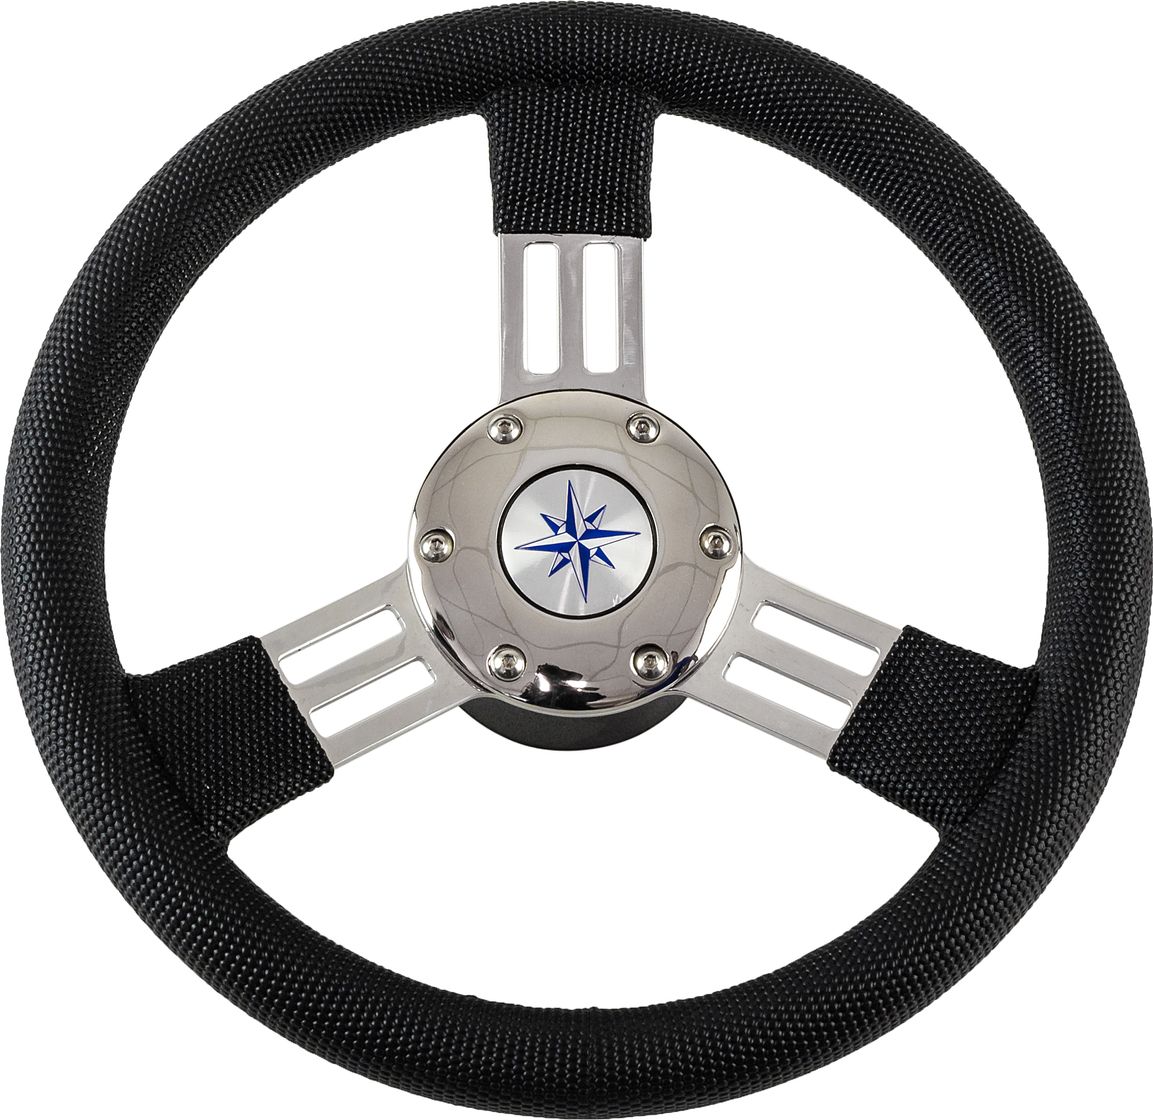 Рулевое колесо PEGASO обод черный, спицы серебряные д. 300 мм VN13327-01 рулевое колесо manta обод белый спицы серебряные д 355 мм vn70551 08